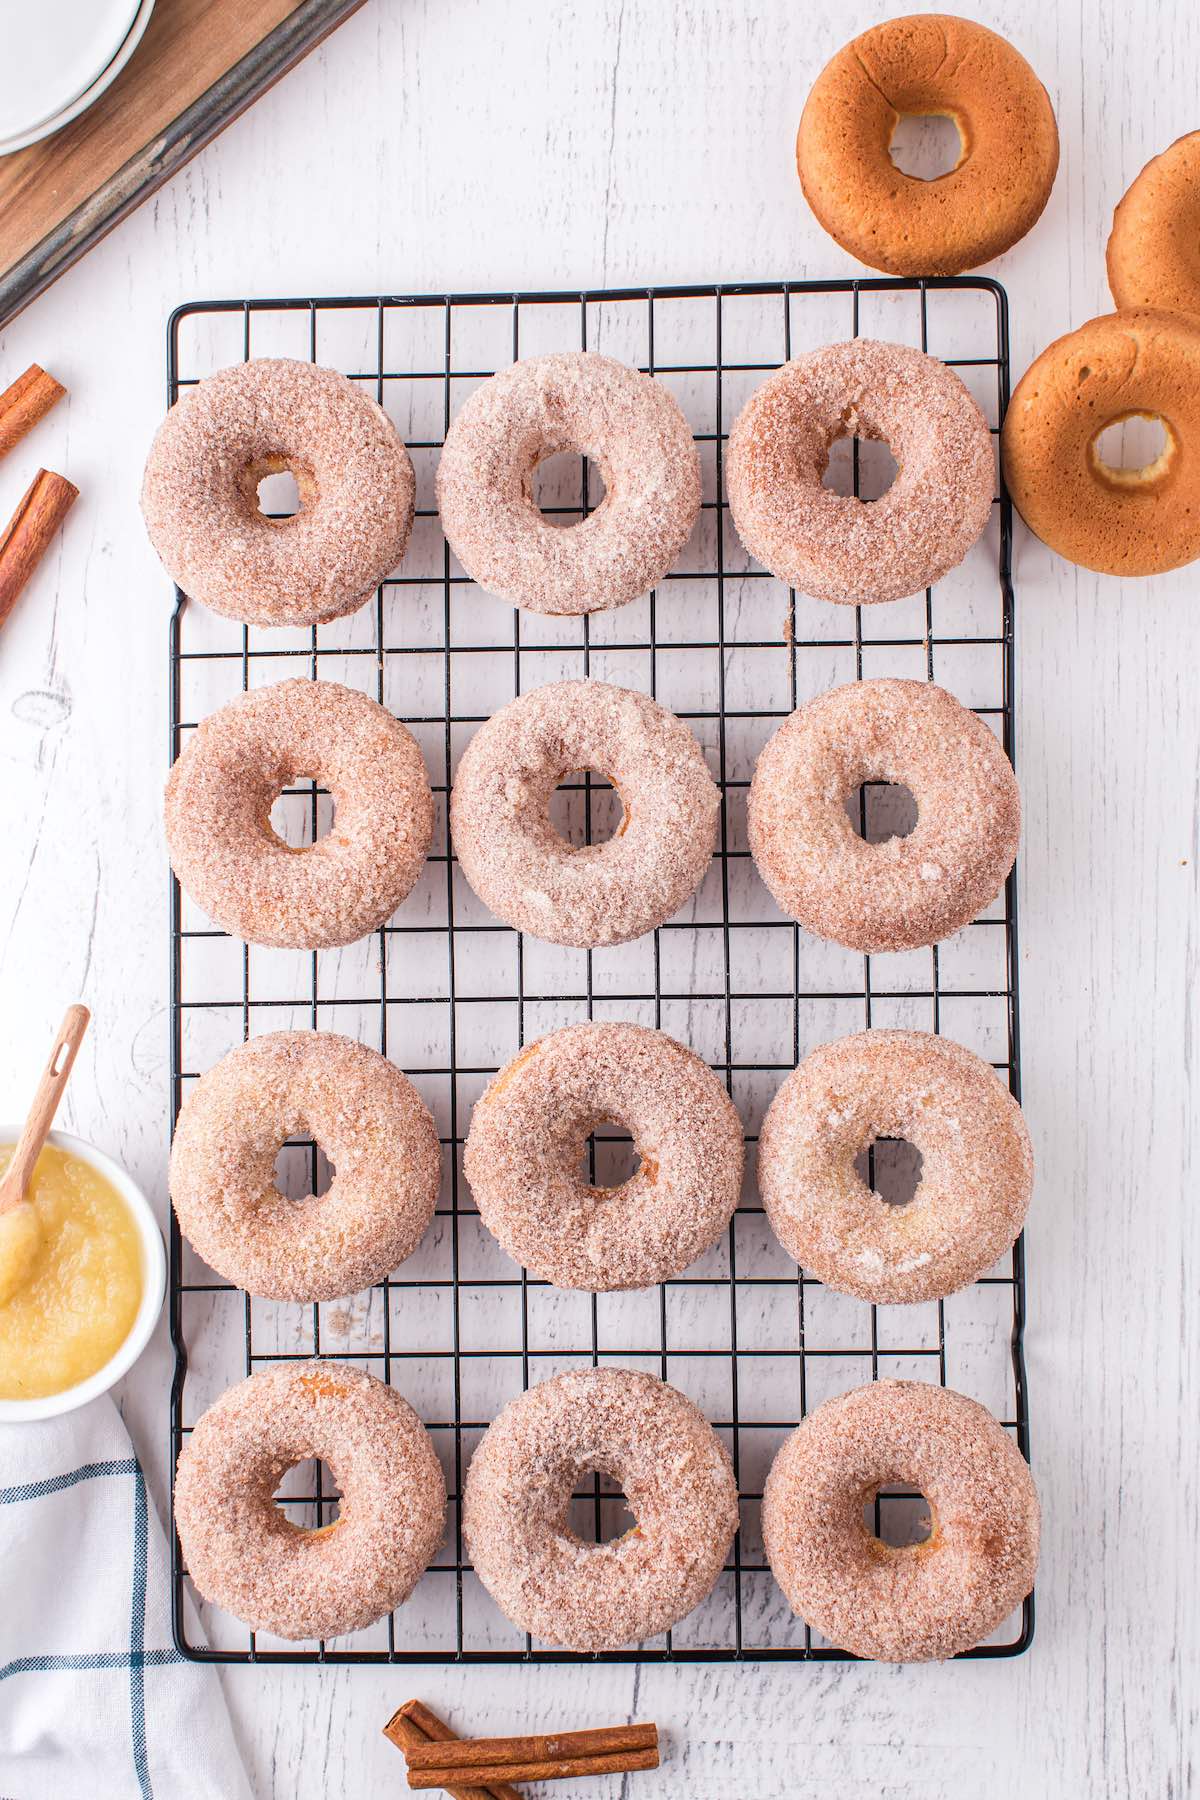 Baked Donuts (Cinnamon Sugar)